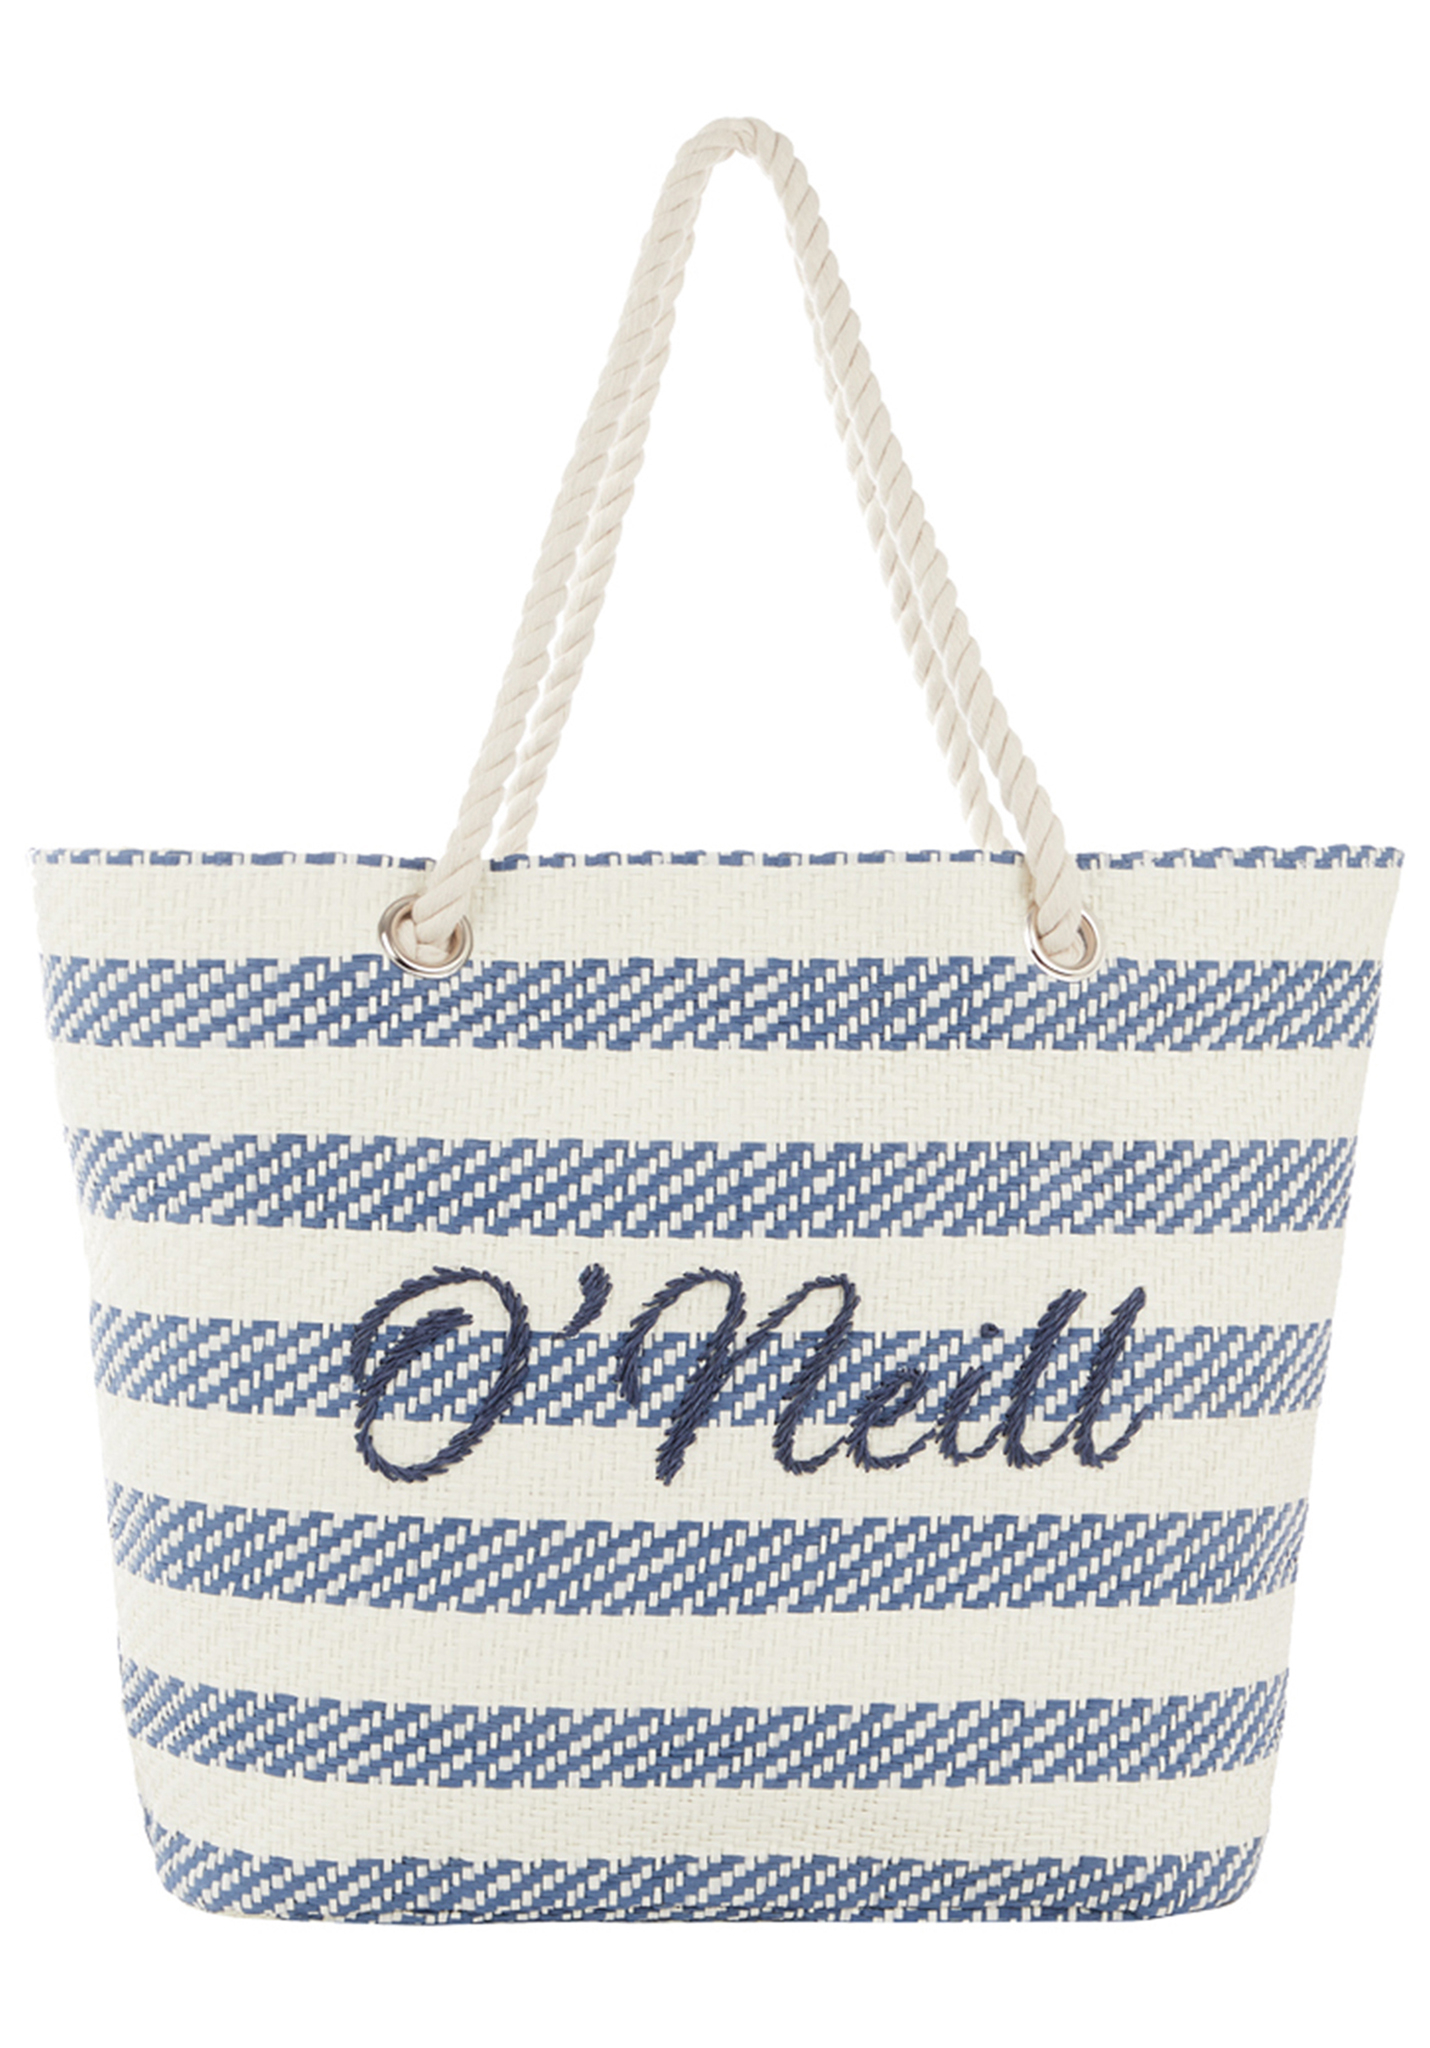 O'Neill Beach Bag Straw Tasche blue aop One Size